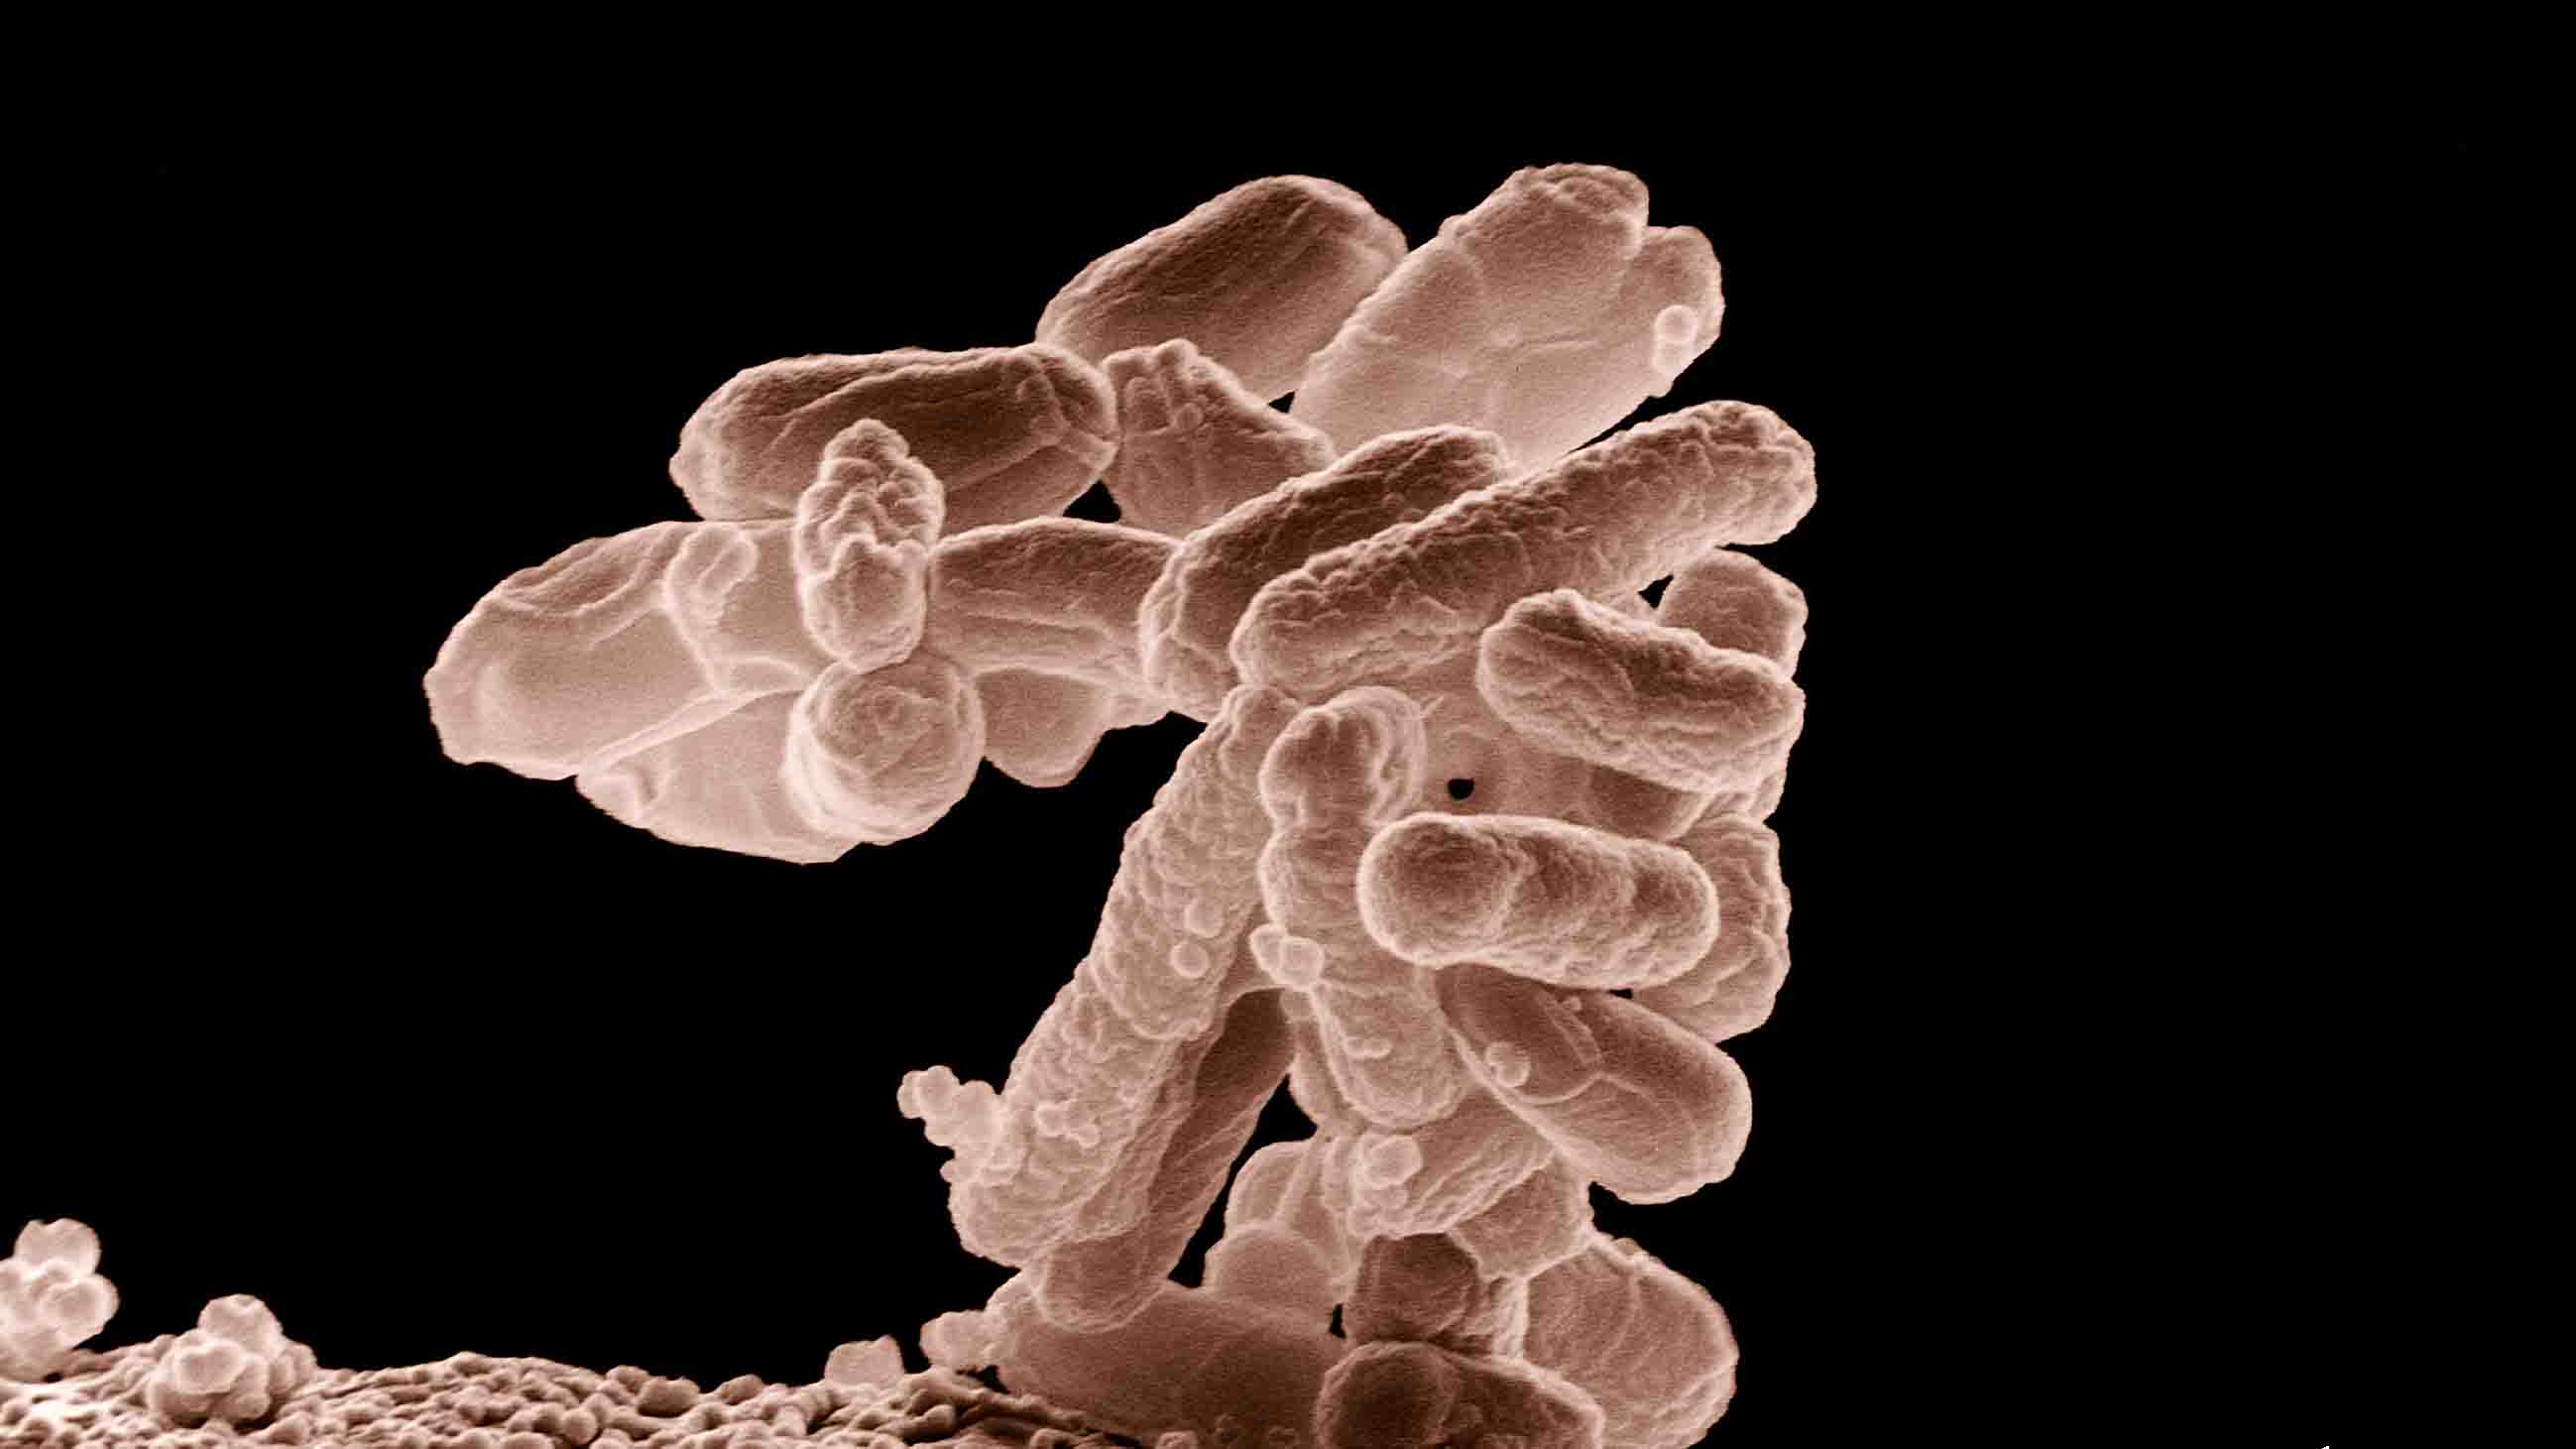 Cerca del 70% de todos los microbios de la Tierra están bajo nuestros pies, de acuerdo a los expertos